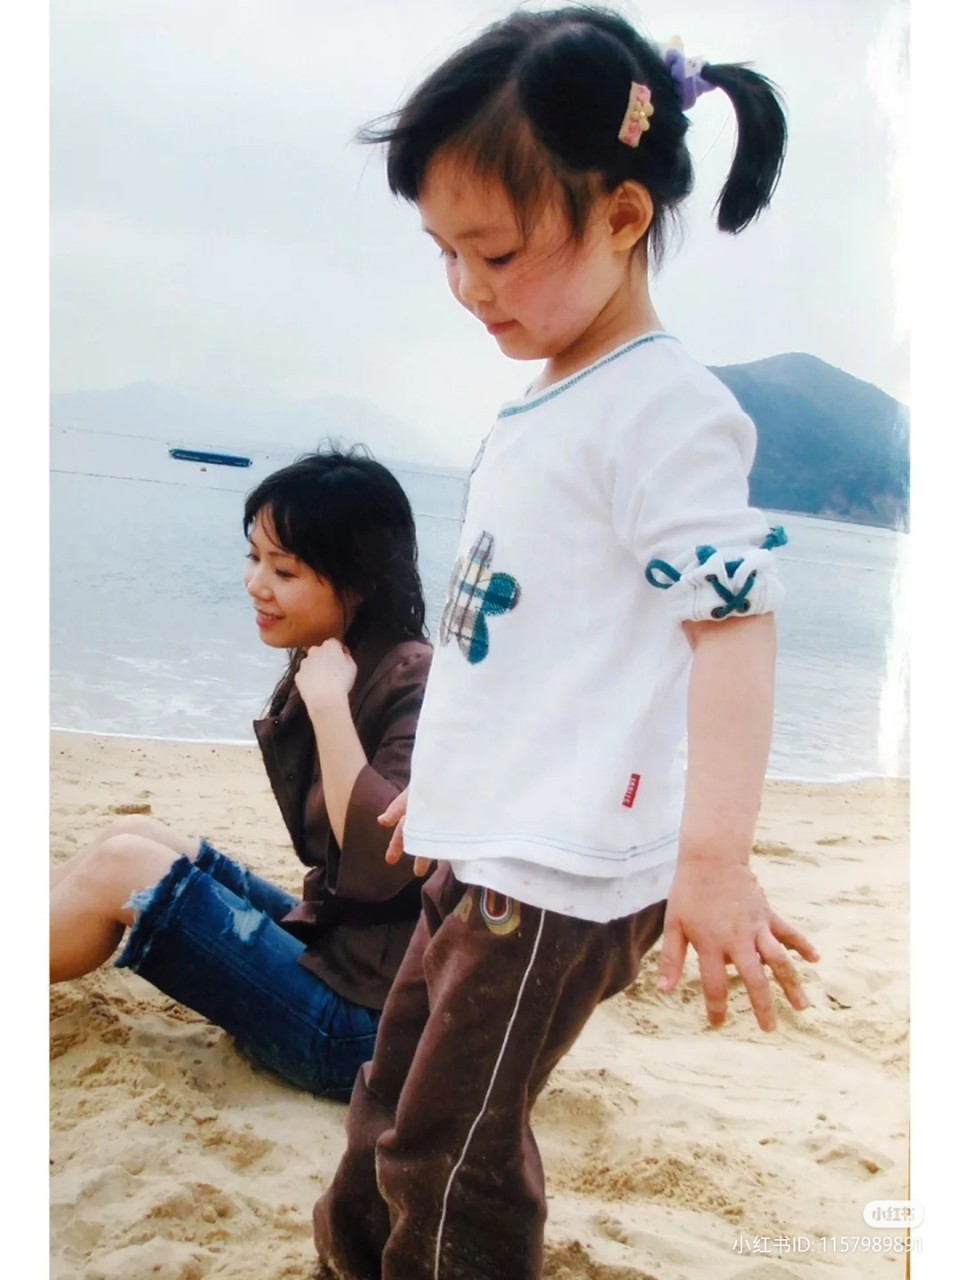 劉秀盈日前分享一張與媽媽呂麗君16年前的合照。